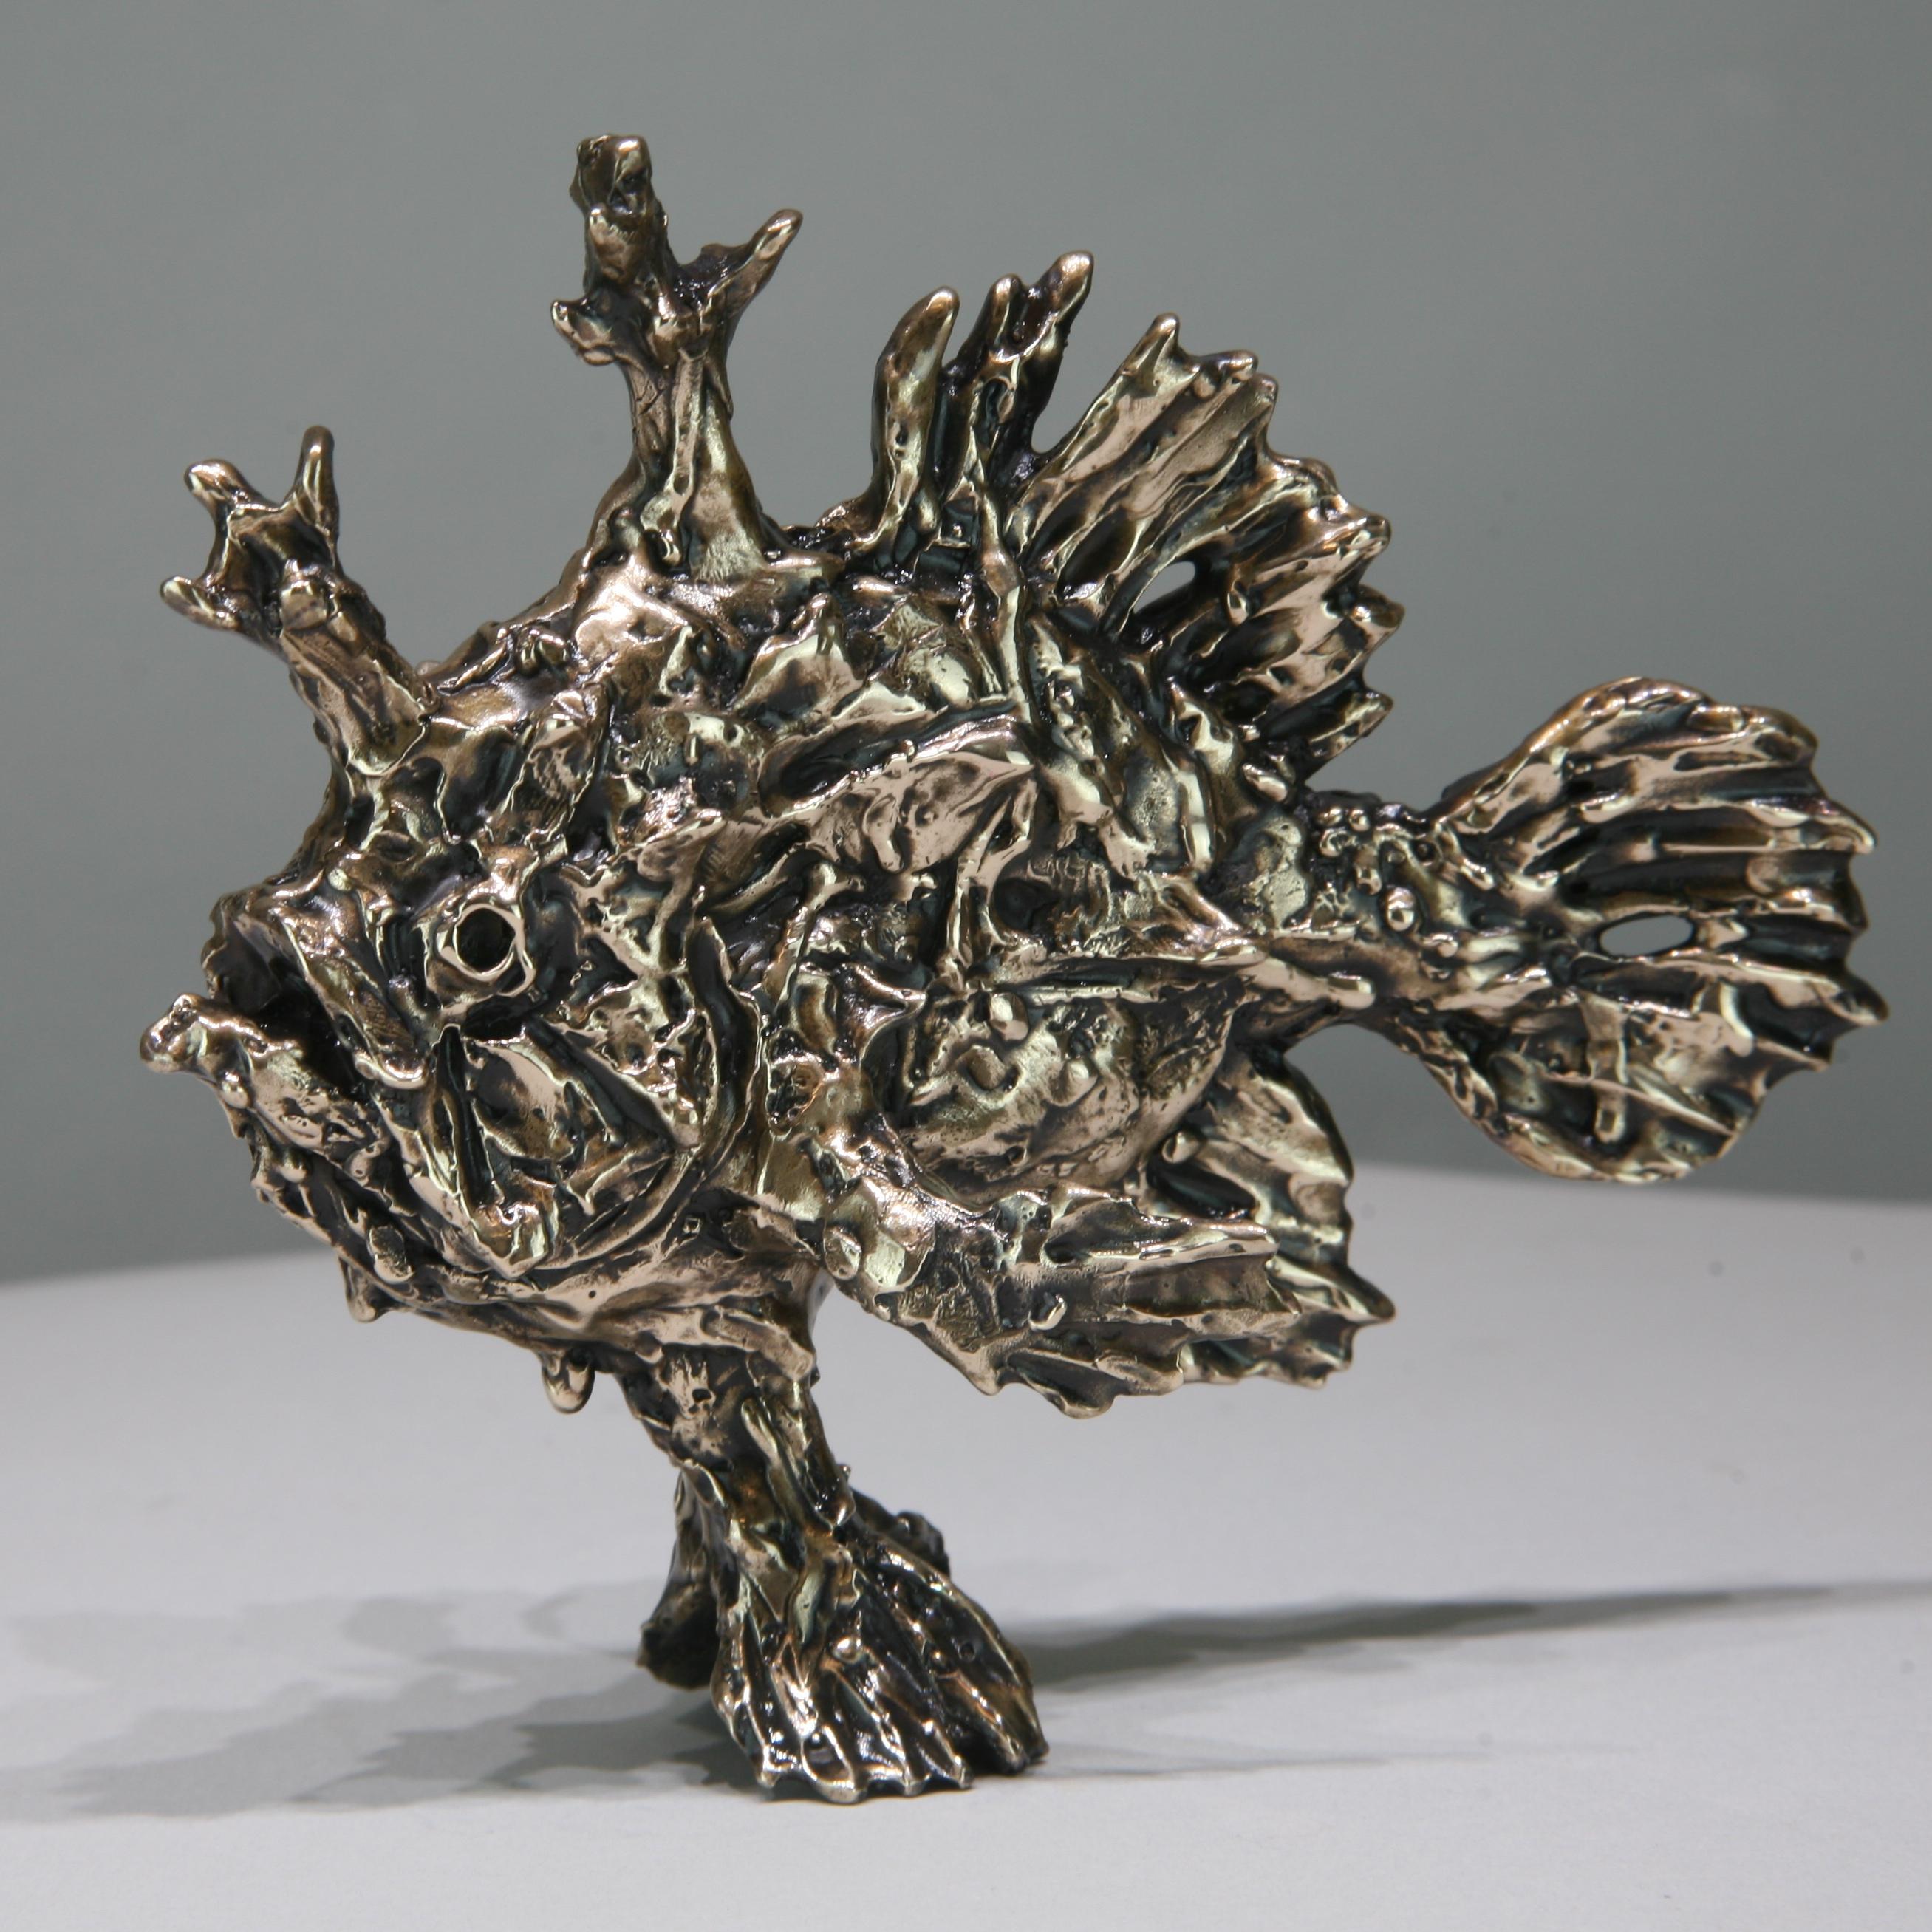 Sargassum-Fisch-Original-Bronze-Wildtier-Skulptur-Kunstwerk-Gegenwartskunst – Sculpture von Andrzej Szymczyk